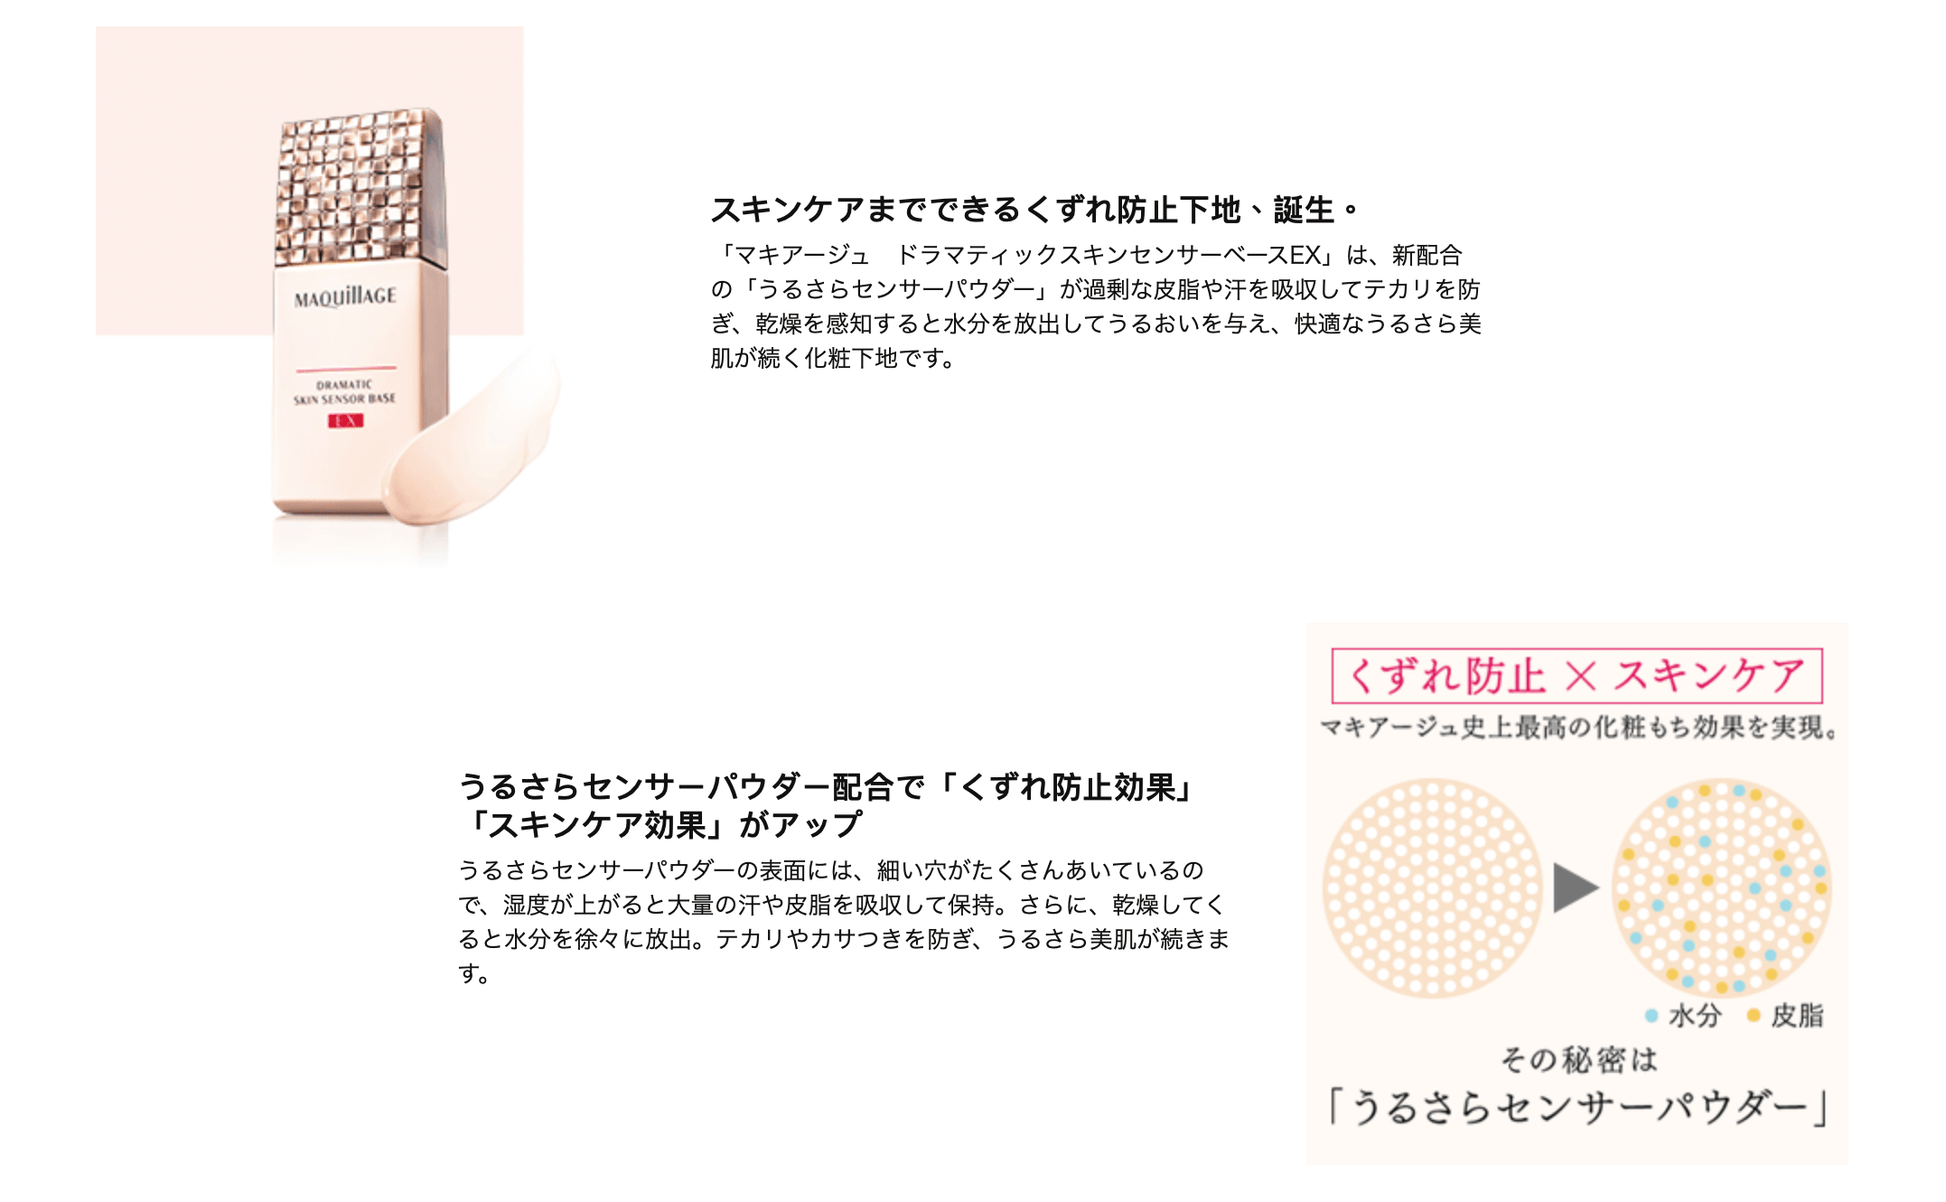 日本 SHISEIDO 資生堂 新版 MAQUILLAGE 絕色鎖水持久底霜 DRAMATIC SKIN SENSOR BASE EX (SPF25/PA+++) - 東京雜貨店 Chocodream_JP